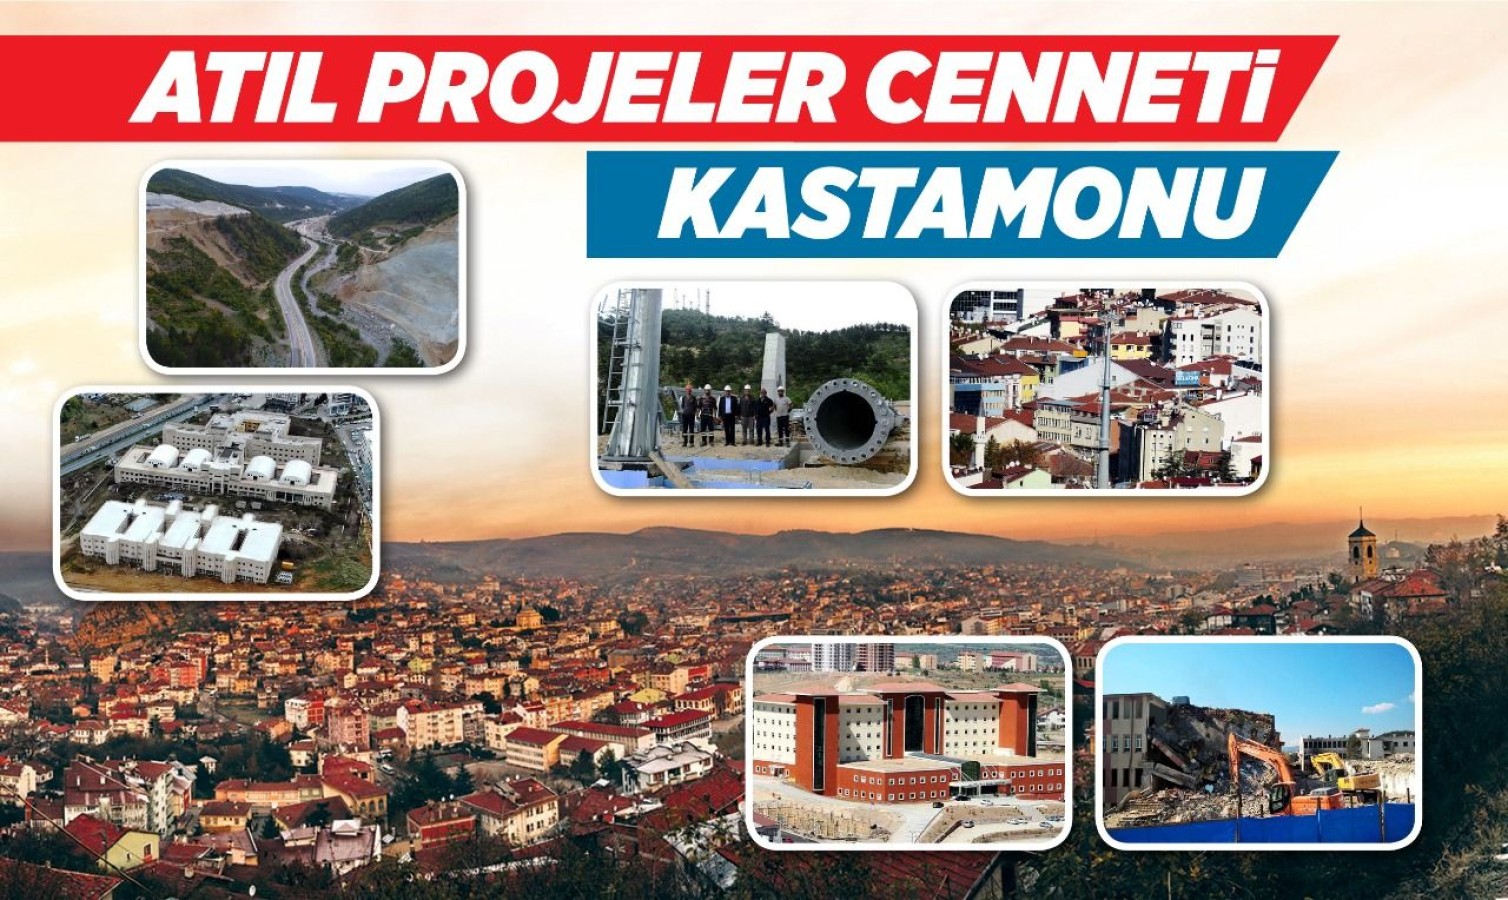 'Atıl projeler' cenneti Kastamonu!..;